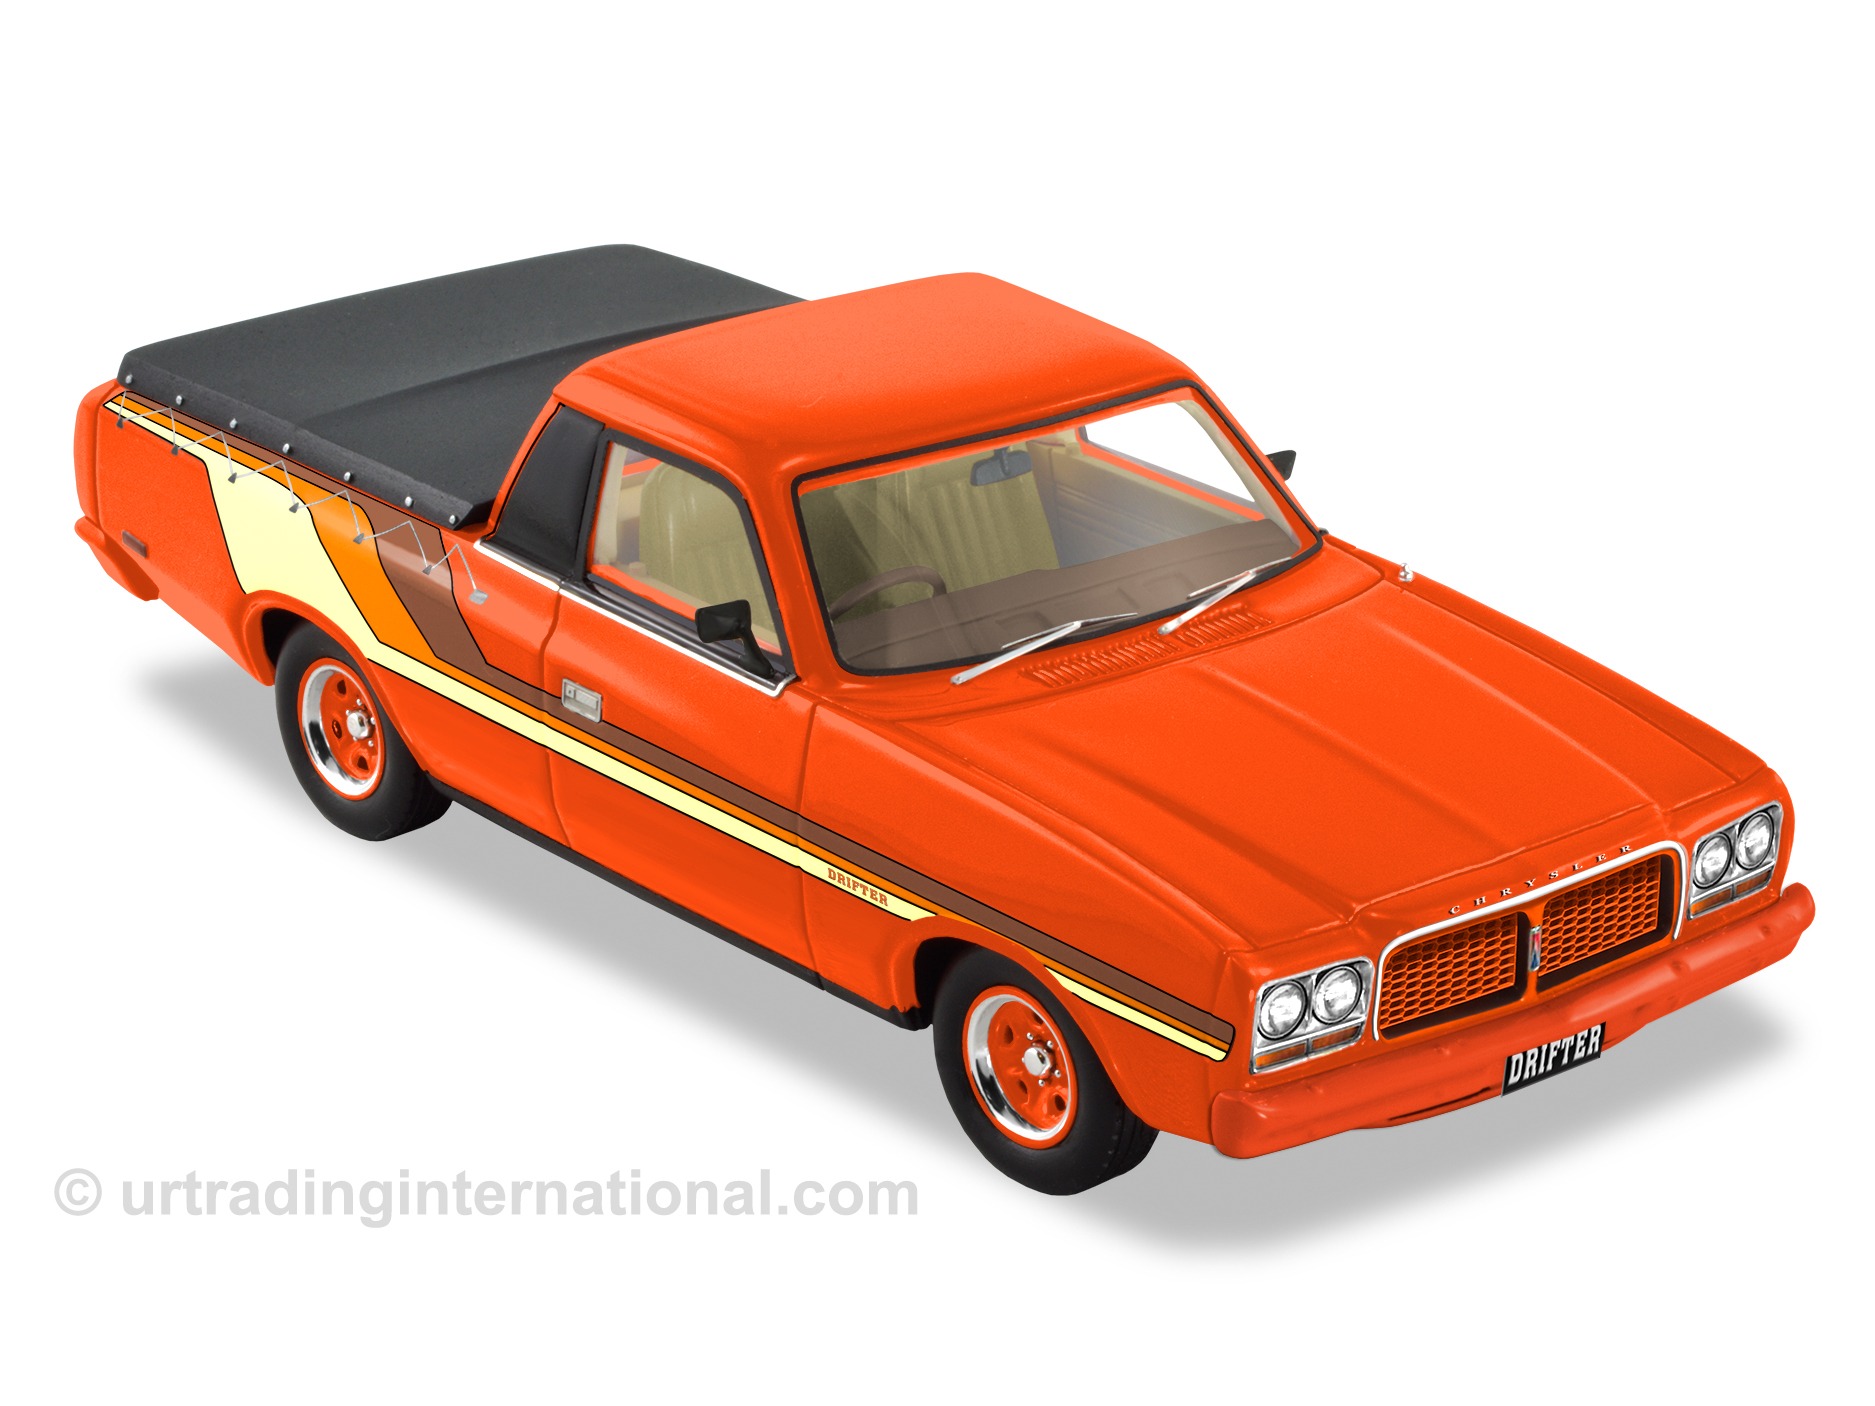 1977 Chrysler CL Drifter Ute – Impact Orange